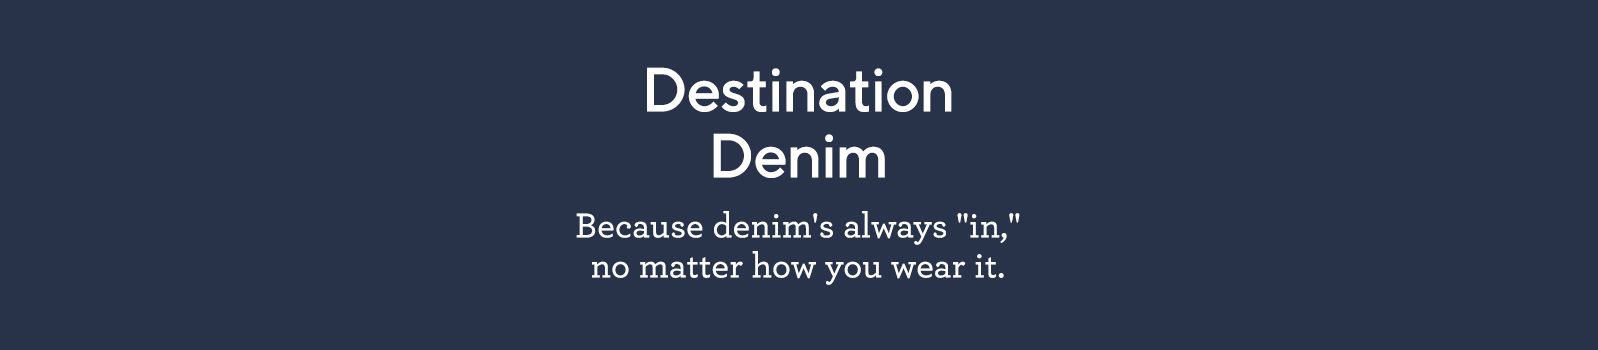 Destination Denim  Because denim's always "in," no matter how you wear it.